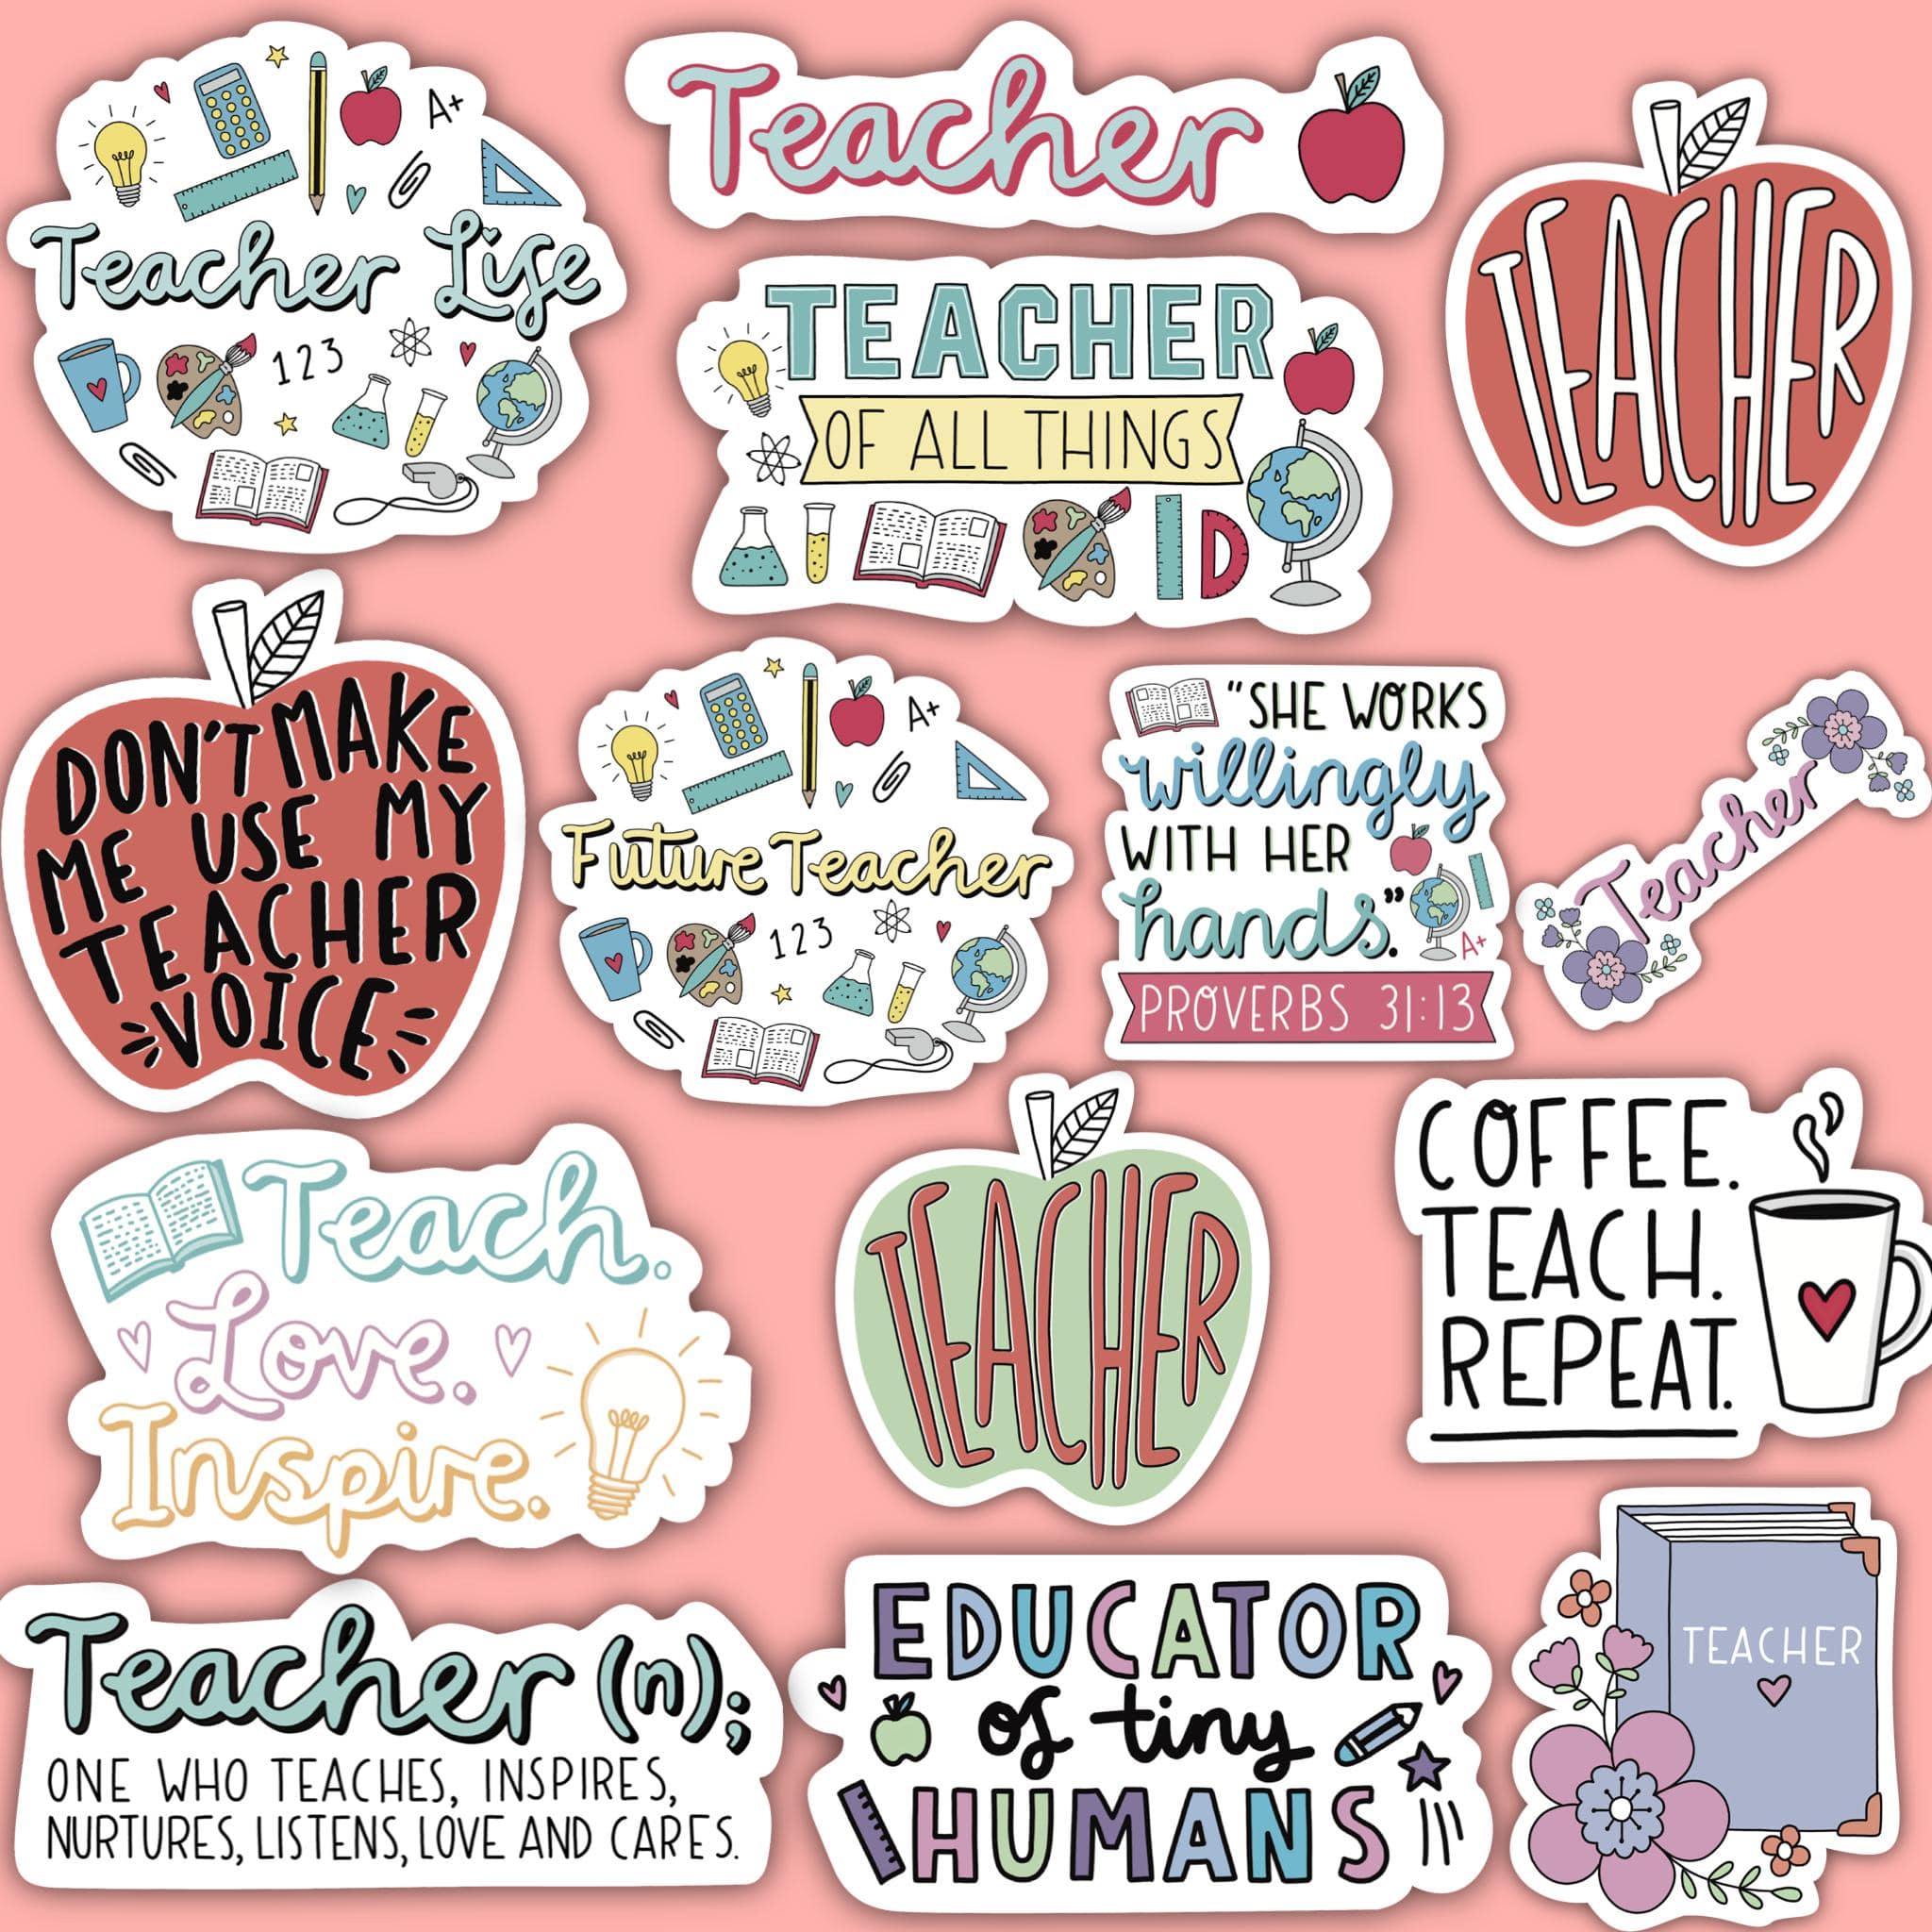 Proud Teacher Sticker